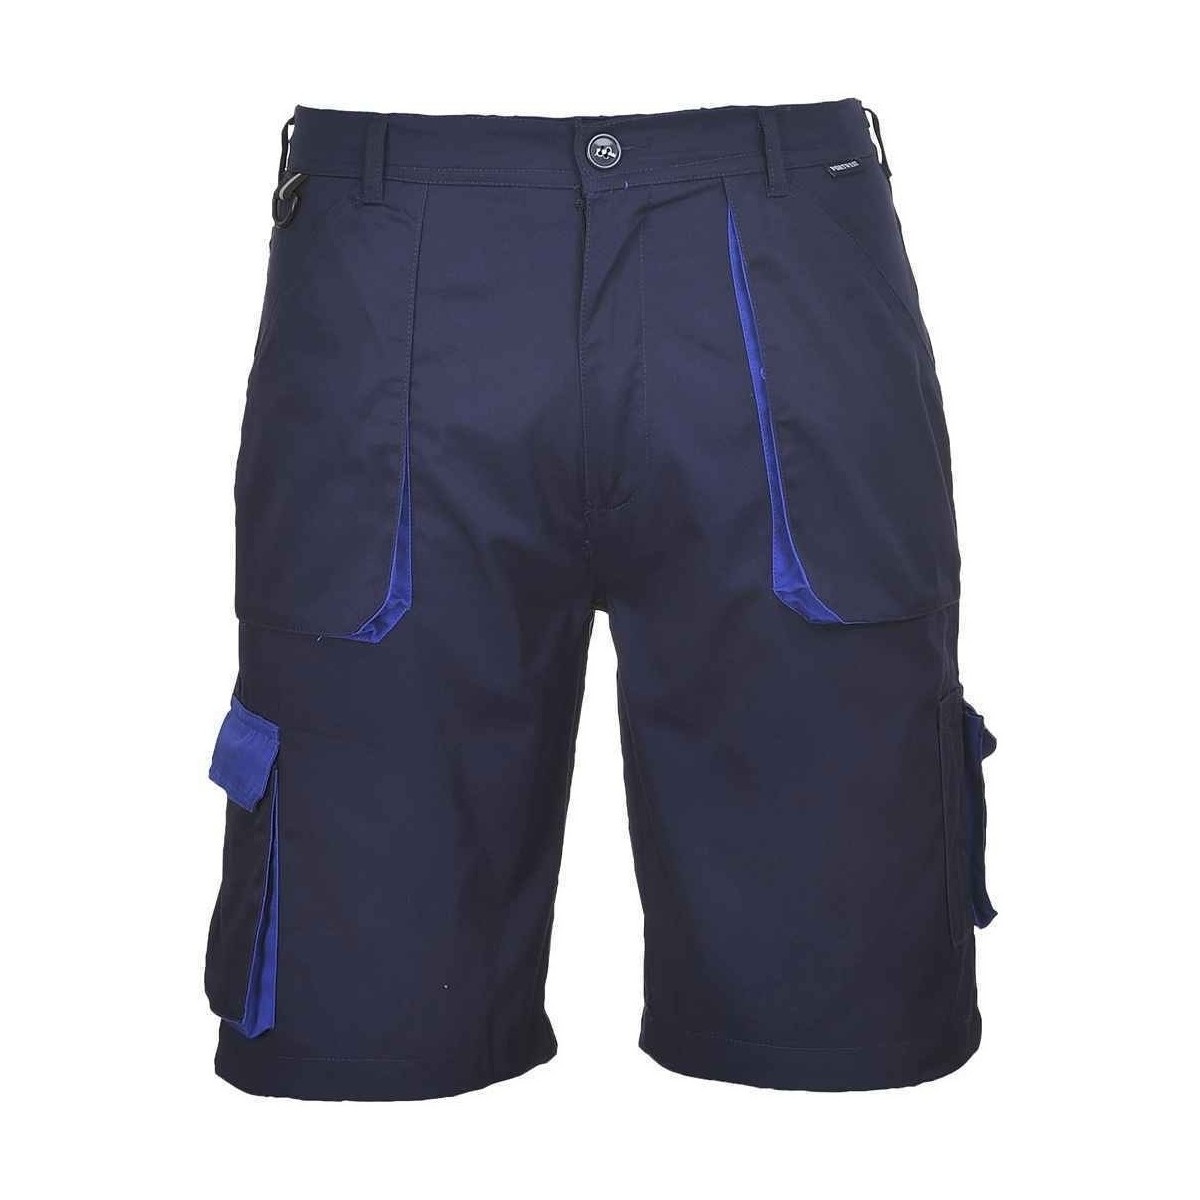 Abbigliamento Uomo Shorts / Bermuda Portwest Texo Blu